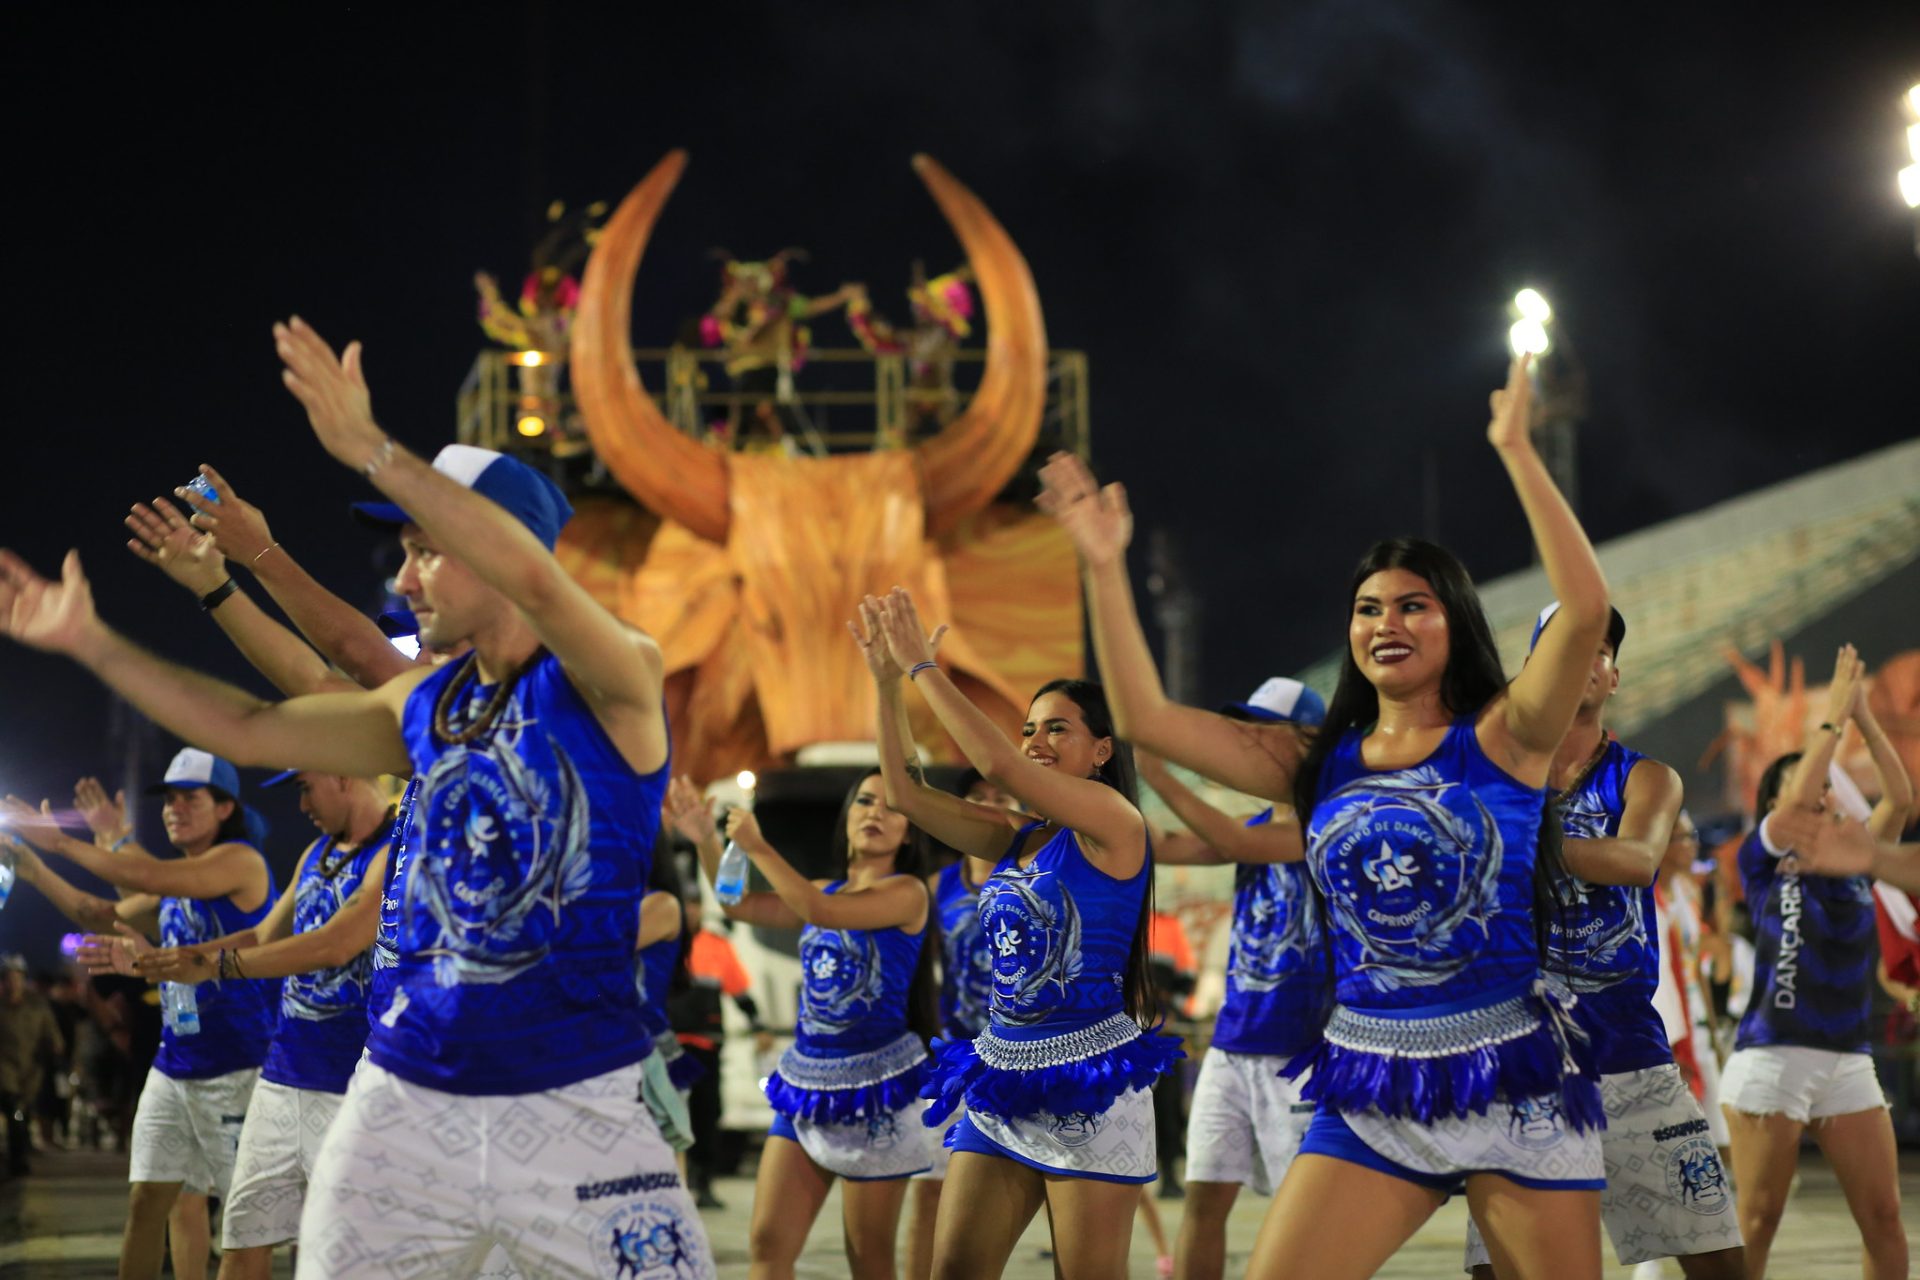 Dançarinos na 1ª noite do Boi Manaus 2022 - Foto: Divulgação/Prefeitura de Manaus